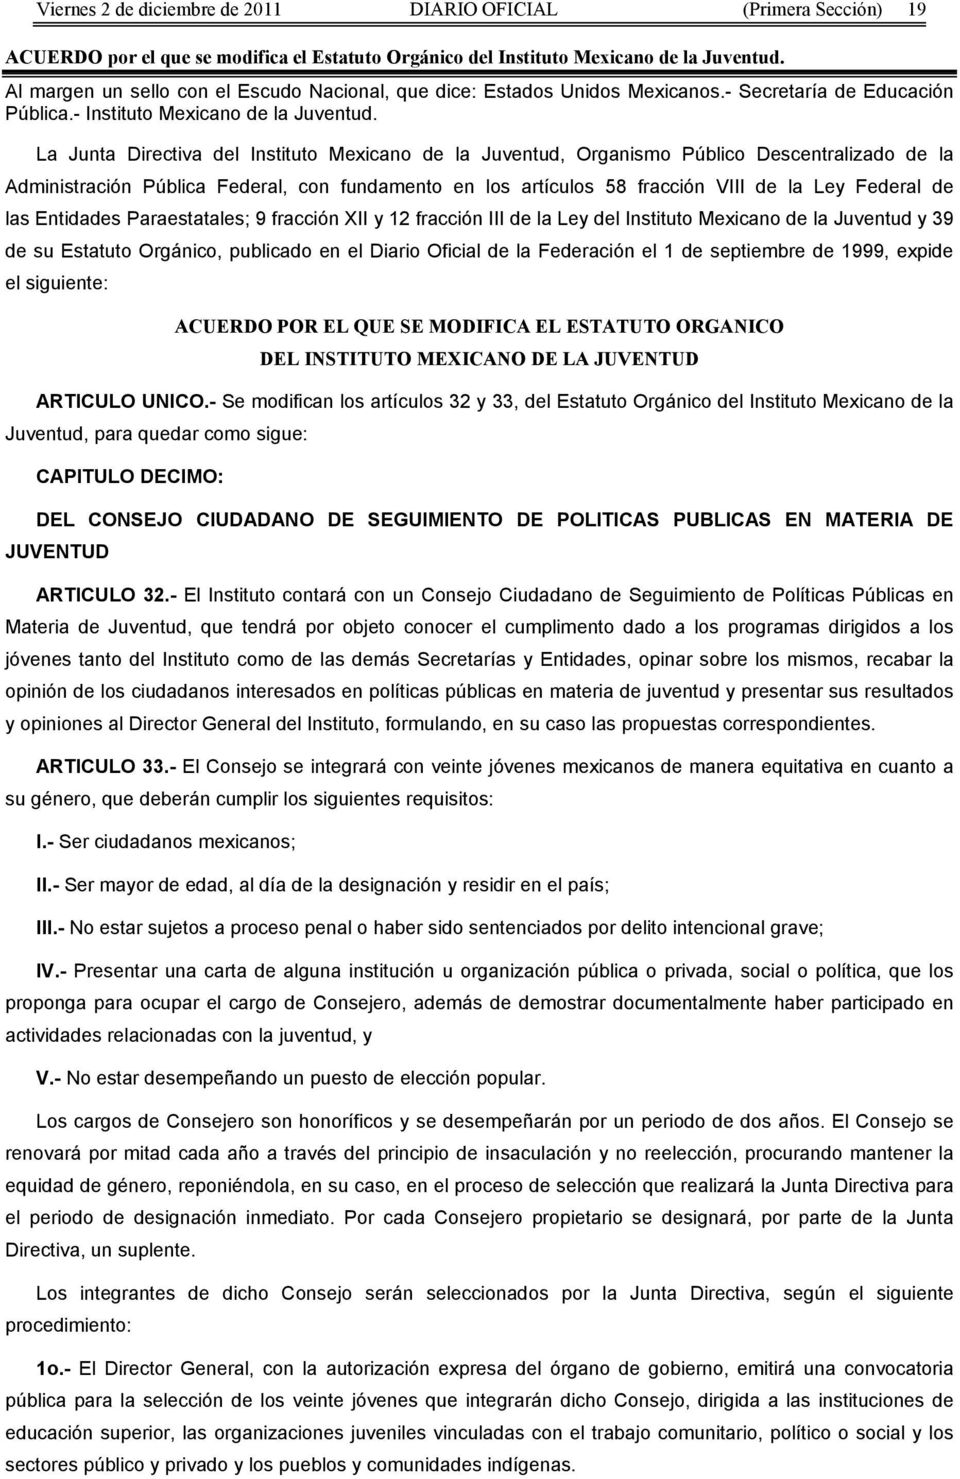 La Junta Directiva del Instituto Mexicano de la Juventud, Organismo Público Descentralizado de la Administración Pública, con fundamento en los artículos 58 fracción VIII de la Ley de las Entidades